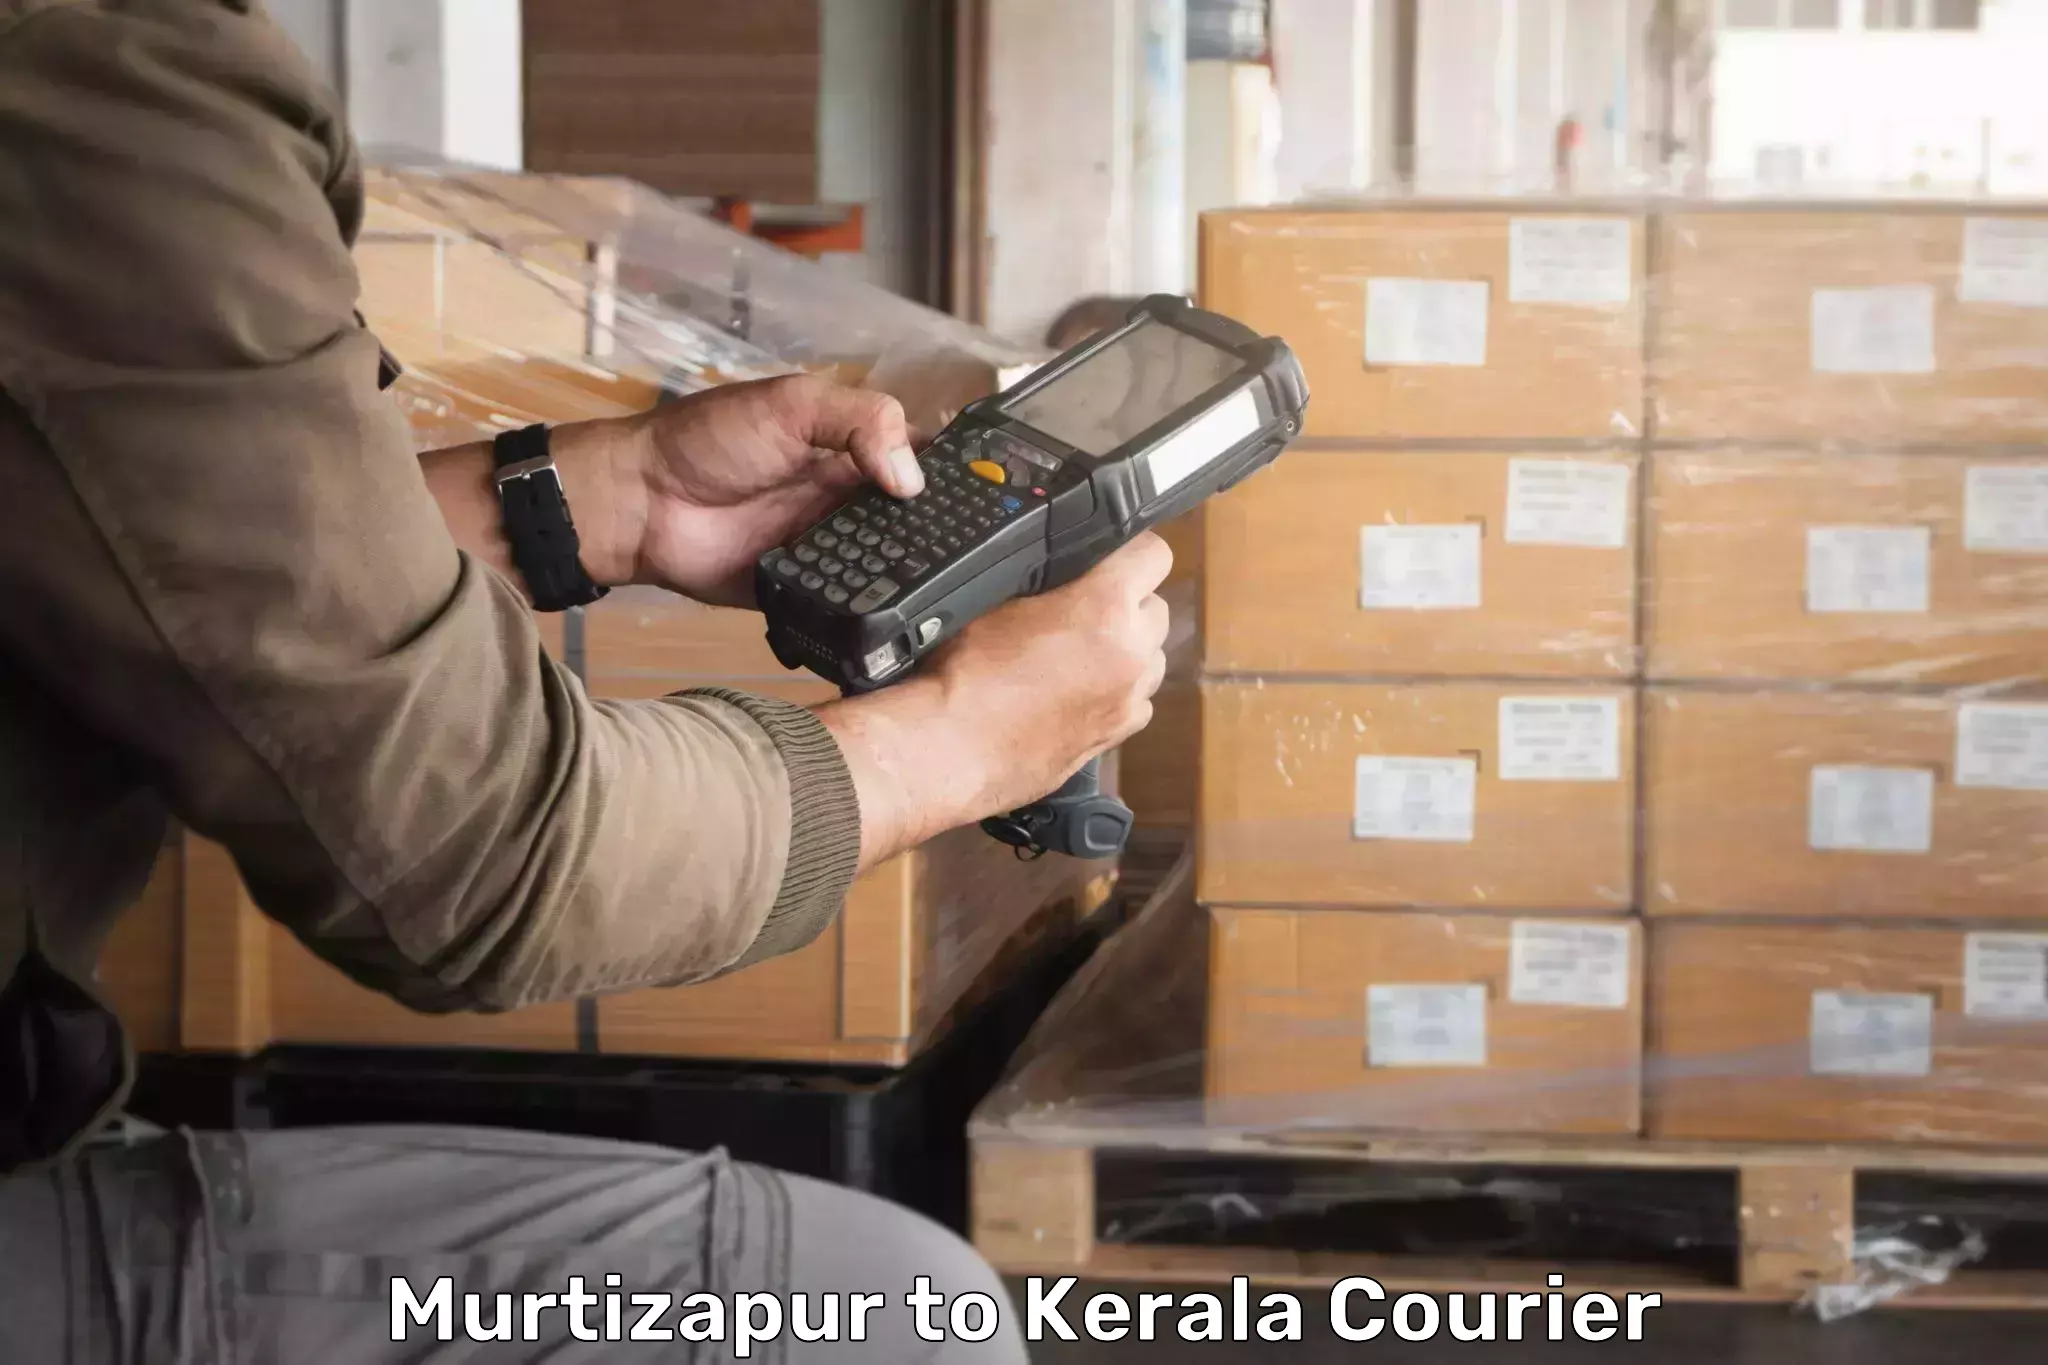 Smart shipping technology Murtizapur to Cochin Port Kochi